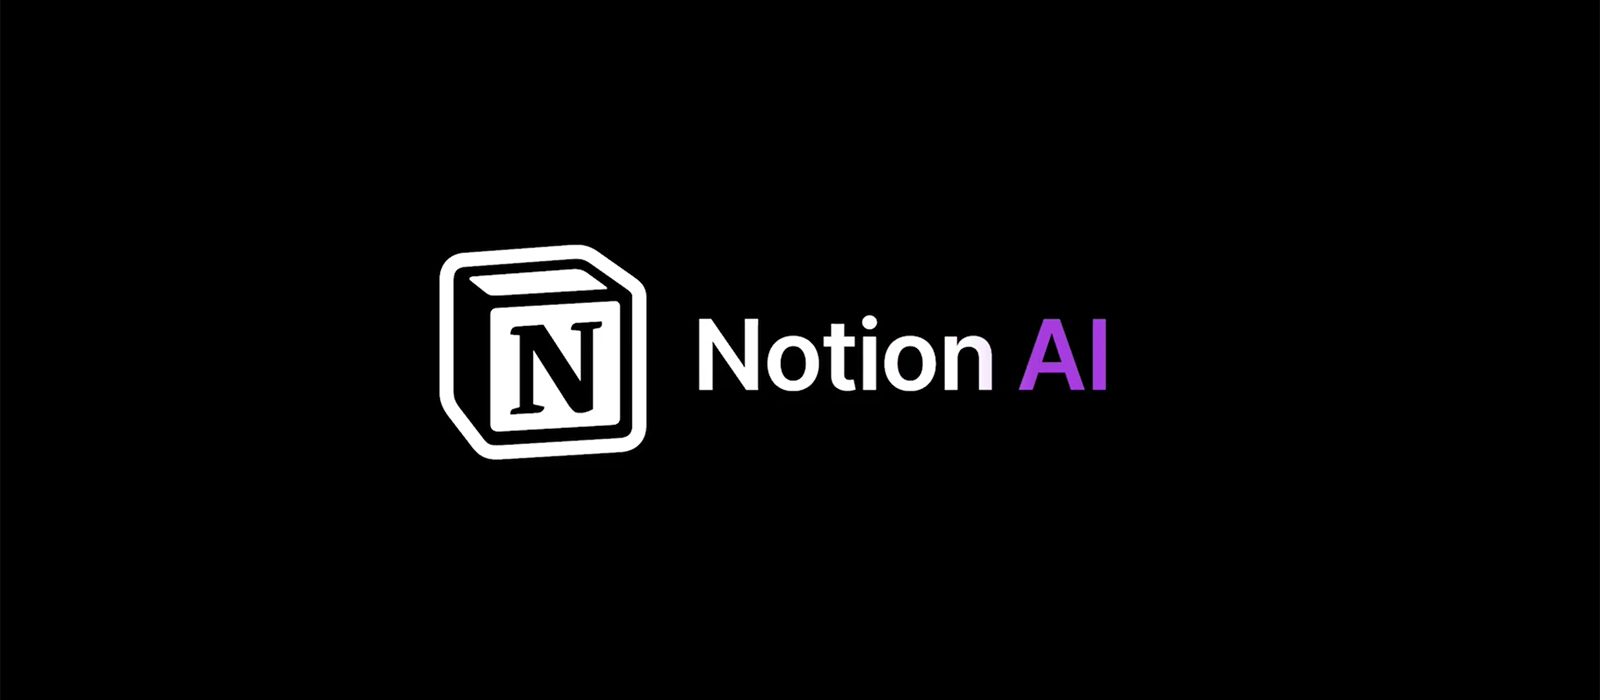 知名笔记应用 Notion 正式推出 Notion AI 功能